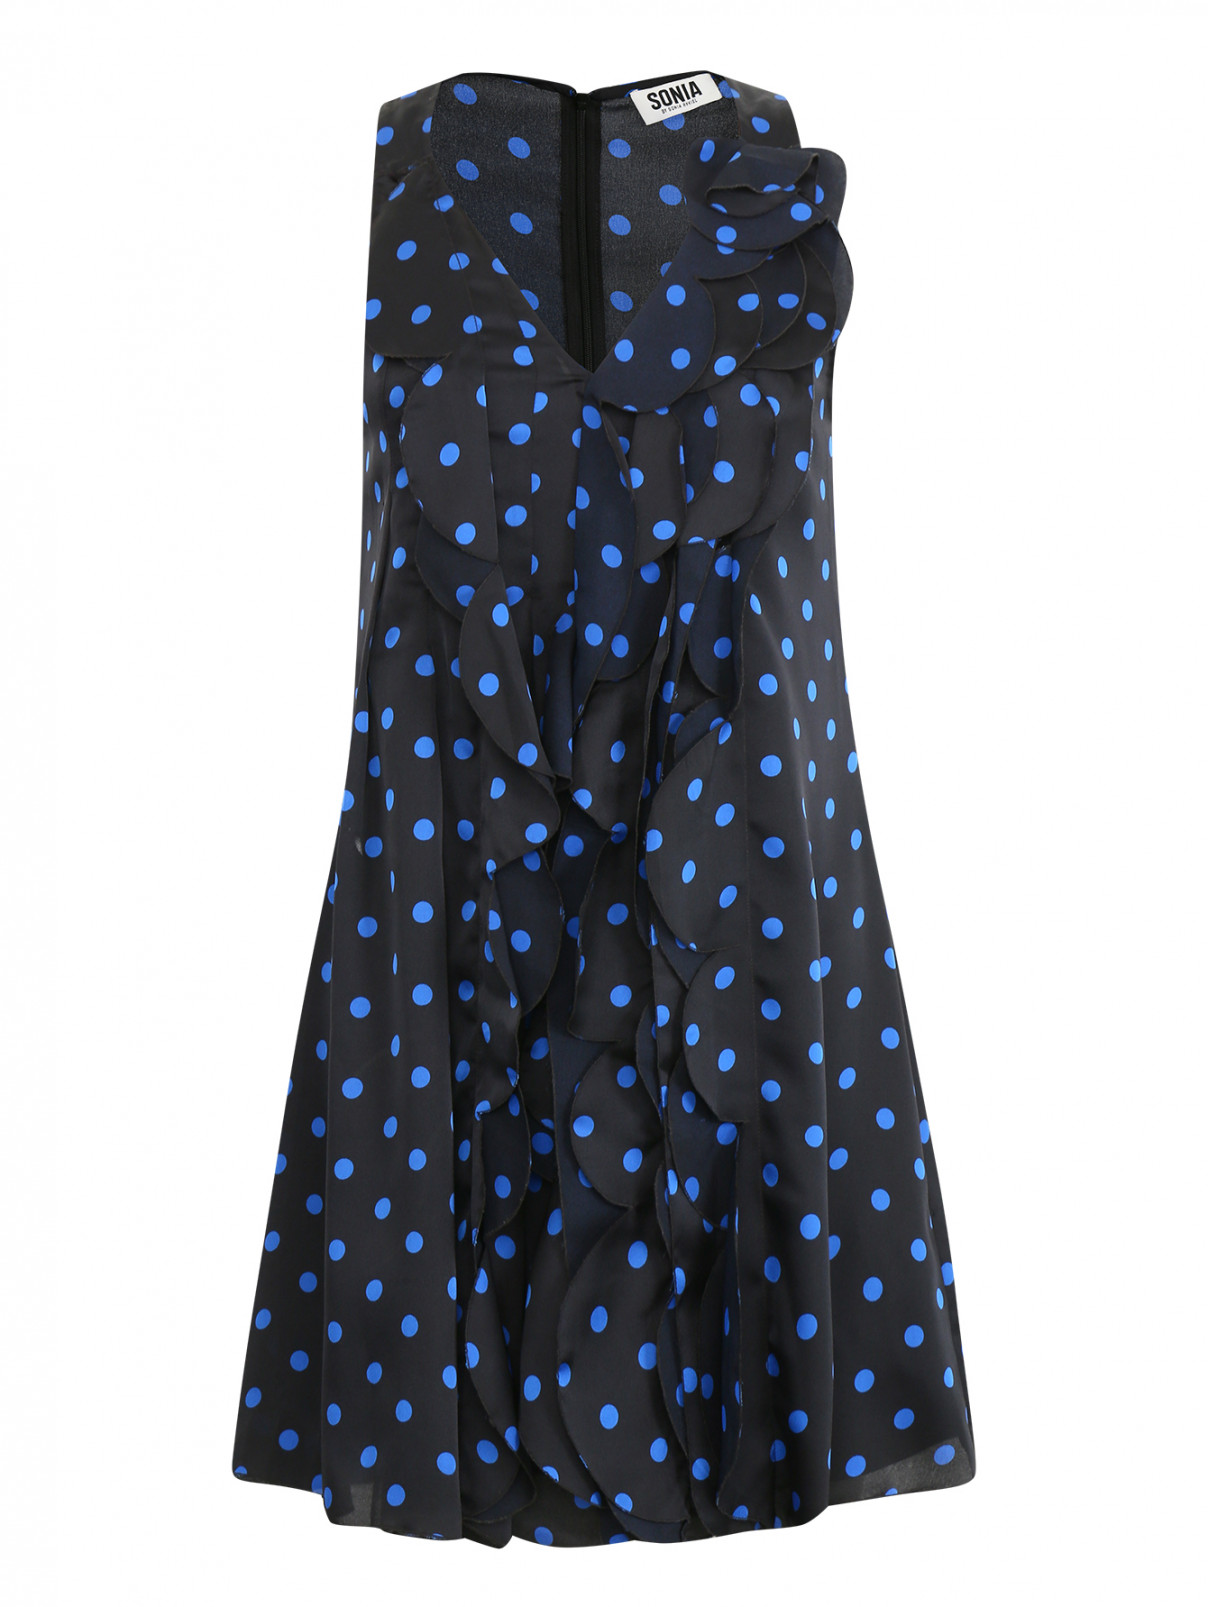 Платье с узором "горох" и драпировкой Sonia Rykiel  –  Общий вид  – Цвет:  Синий